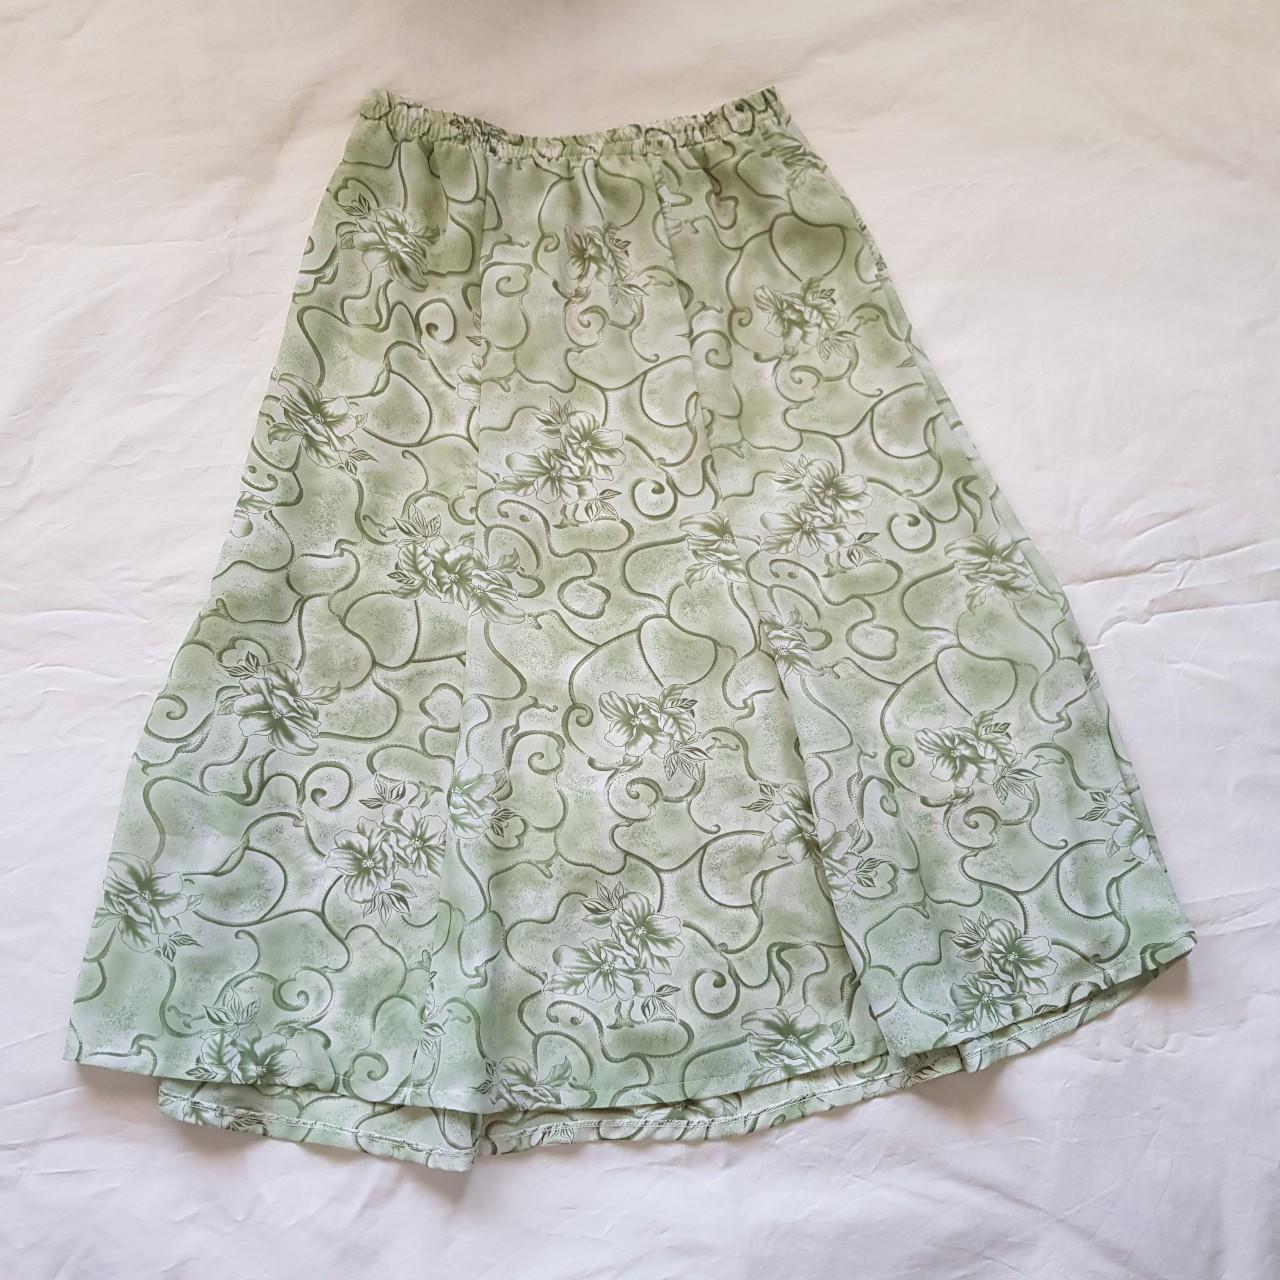 Gorgeous green maxi skirt 🍃 Matching shirt also... - Depop